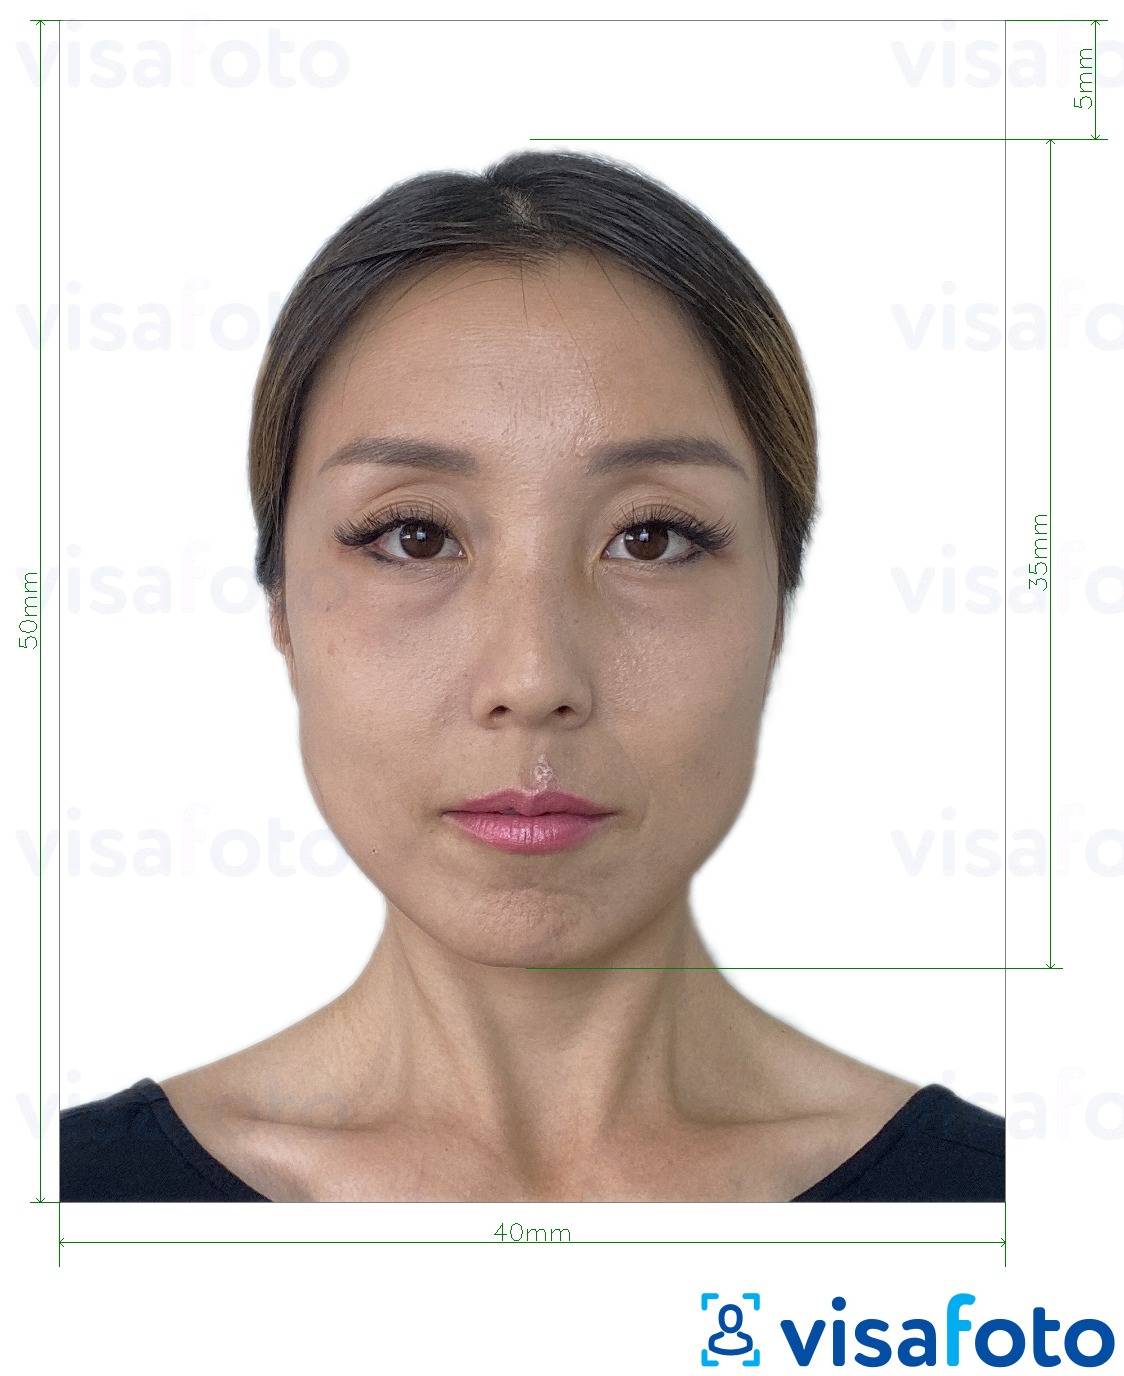 Contoh dari foto untuk Visa Hong Kong 40x50 mm (4x5 cm) dengan ukuran spesifikasi yang tepat